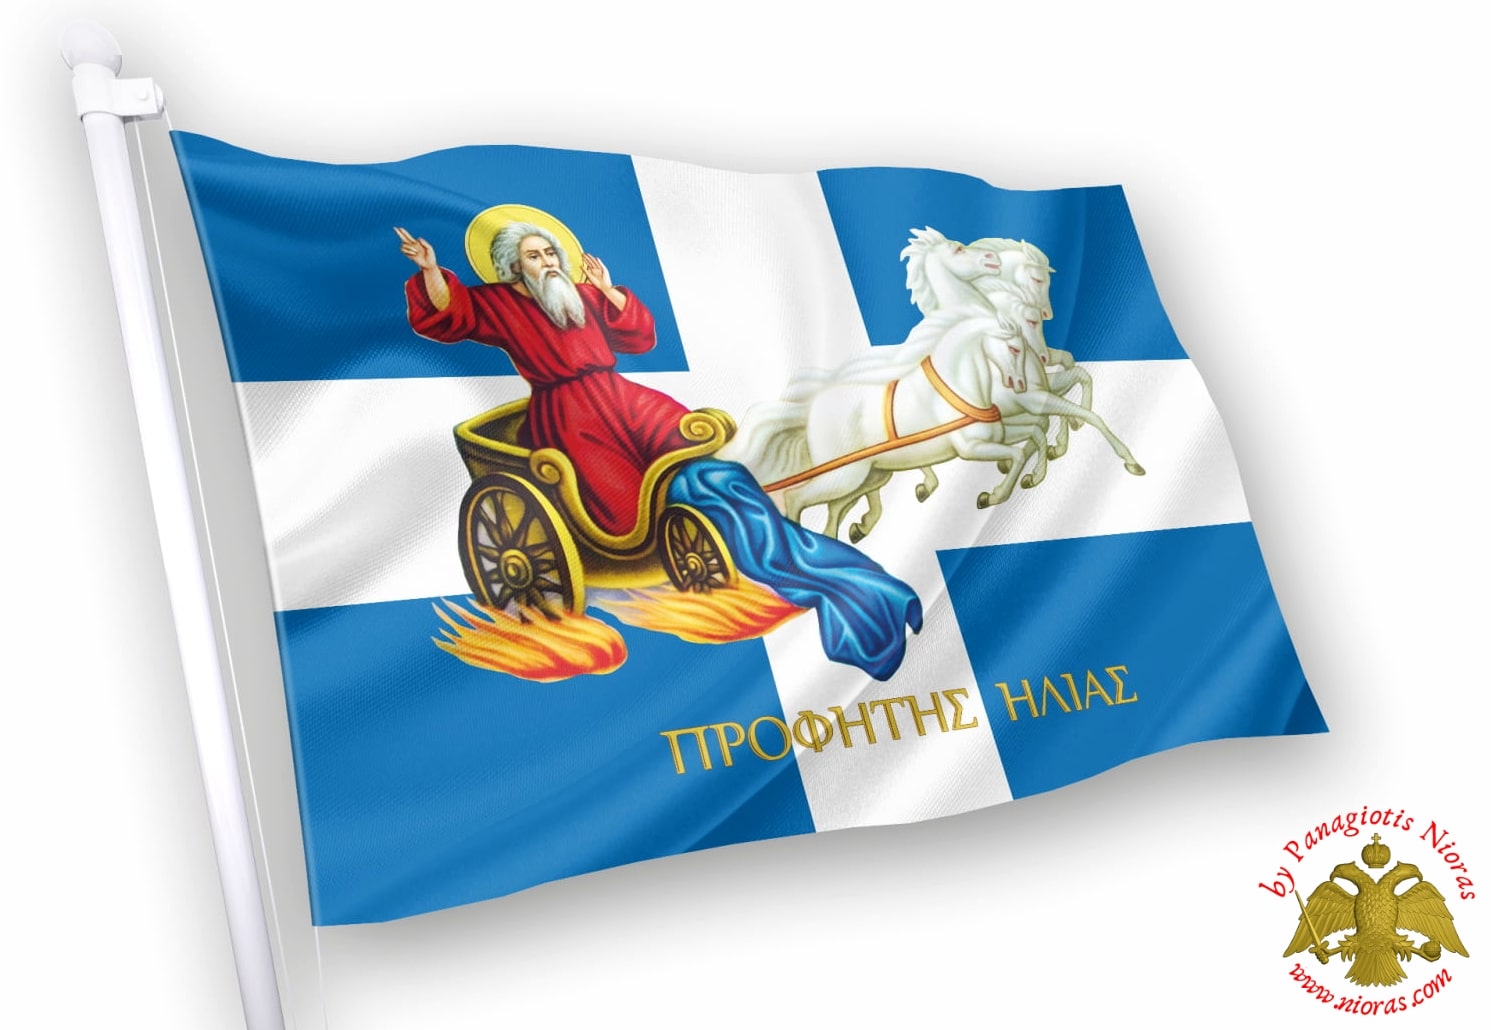 Profitis Ilias Orthodox Greek Flag with Holy Icon